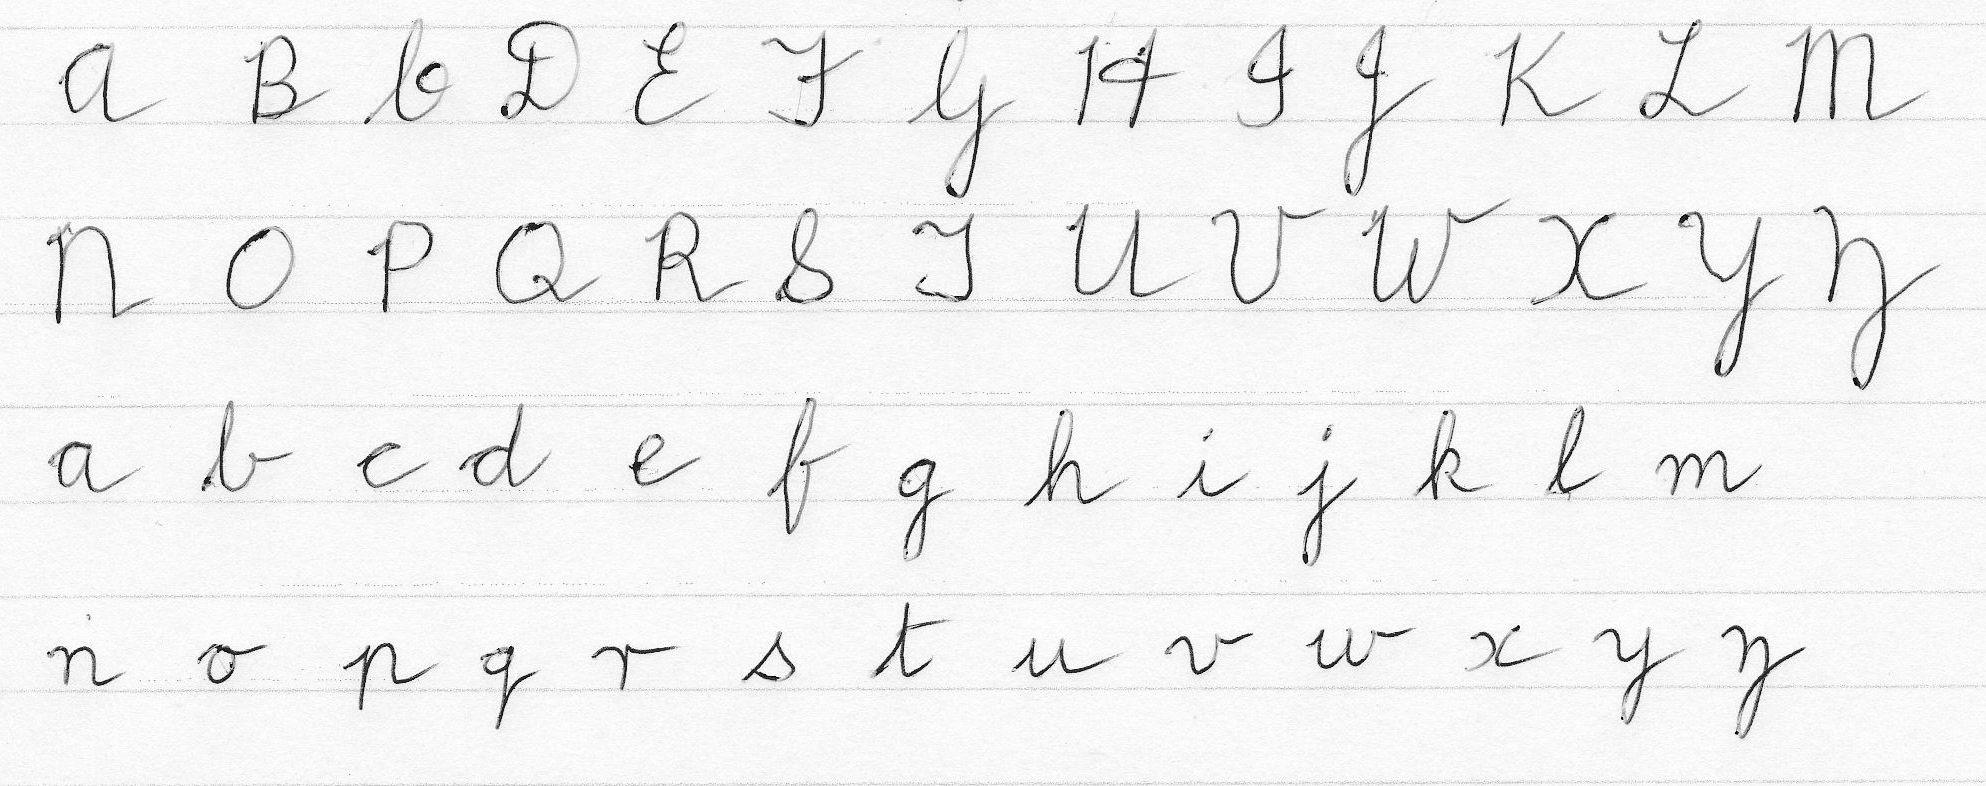 cursive-alphabet-in-english-alphabetworksheetsfree-com-vrogue